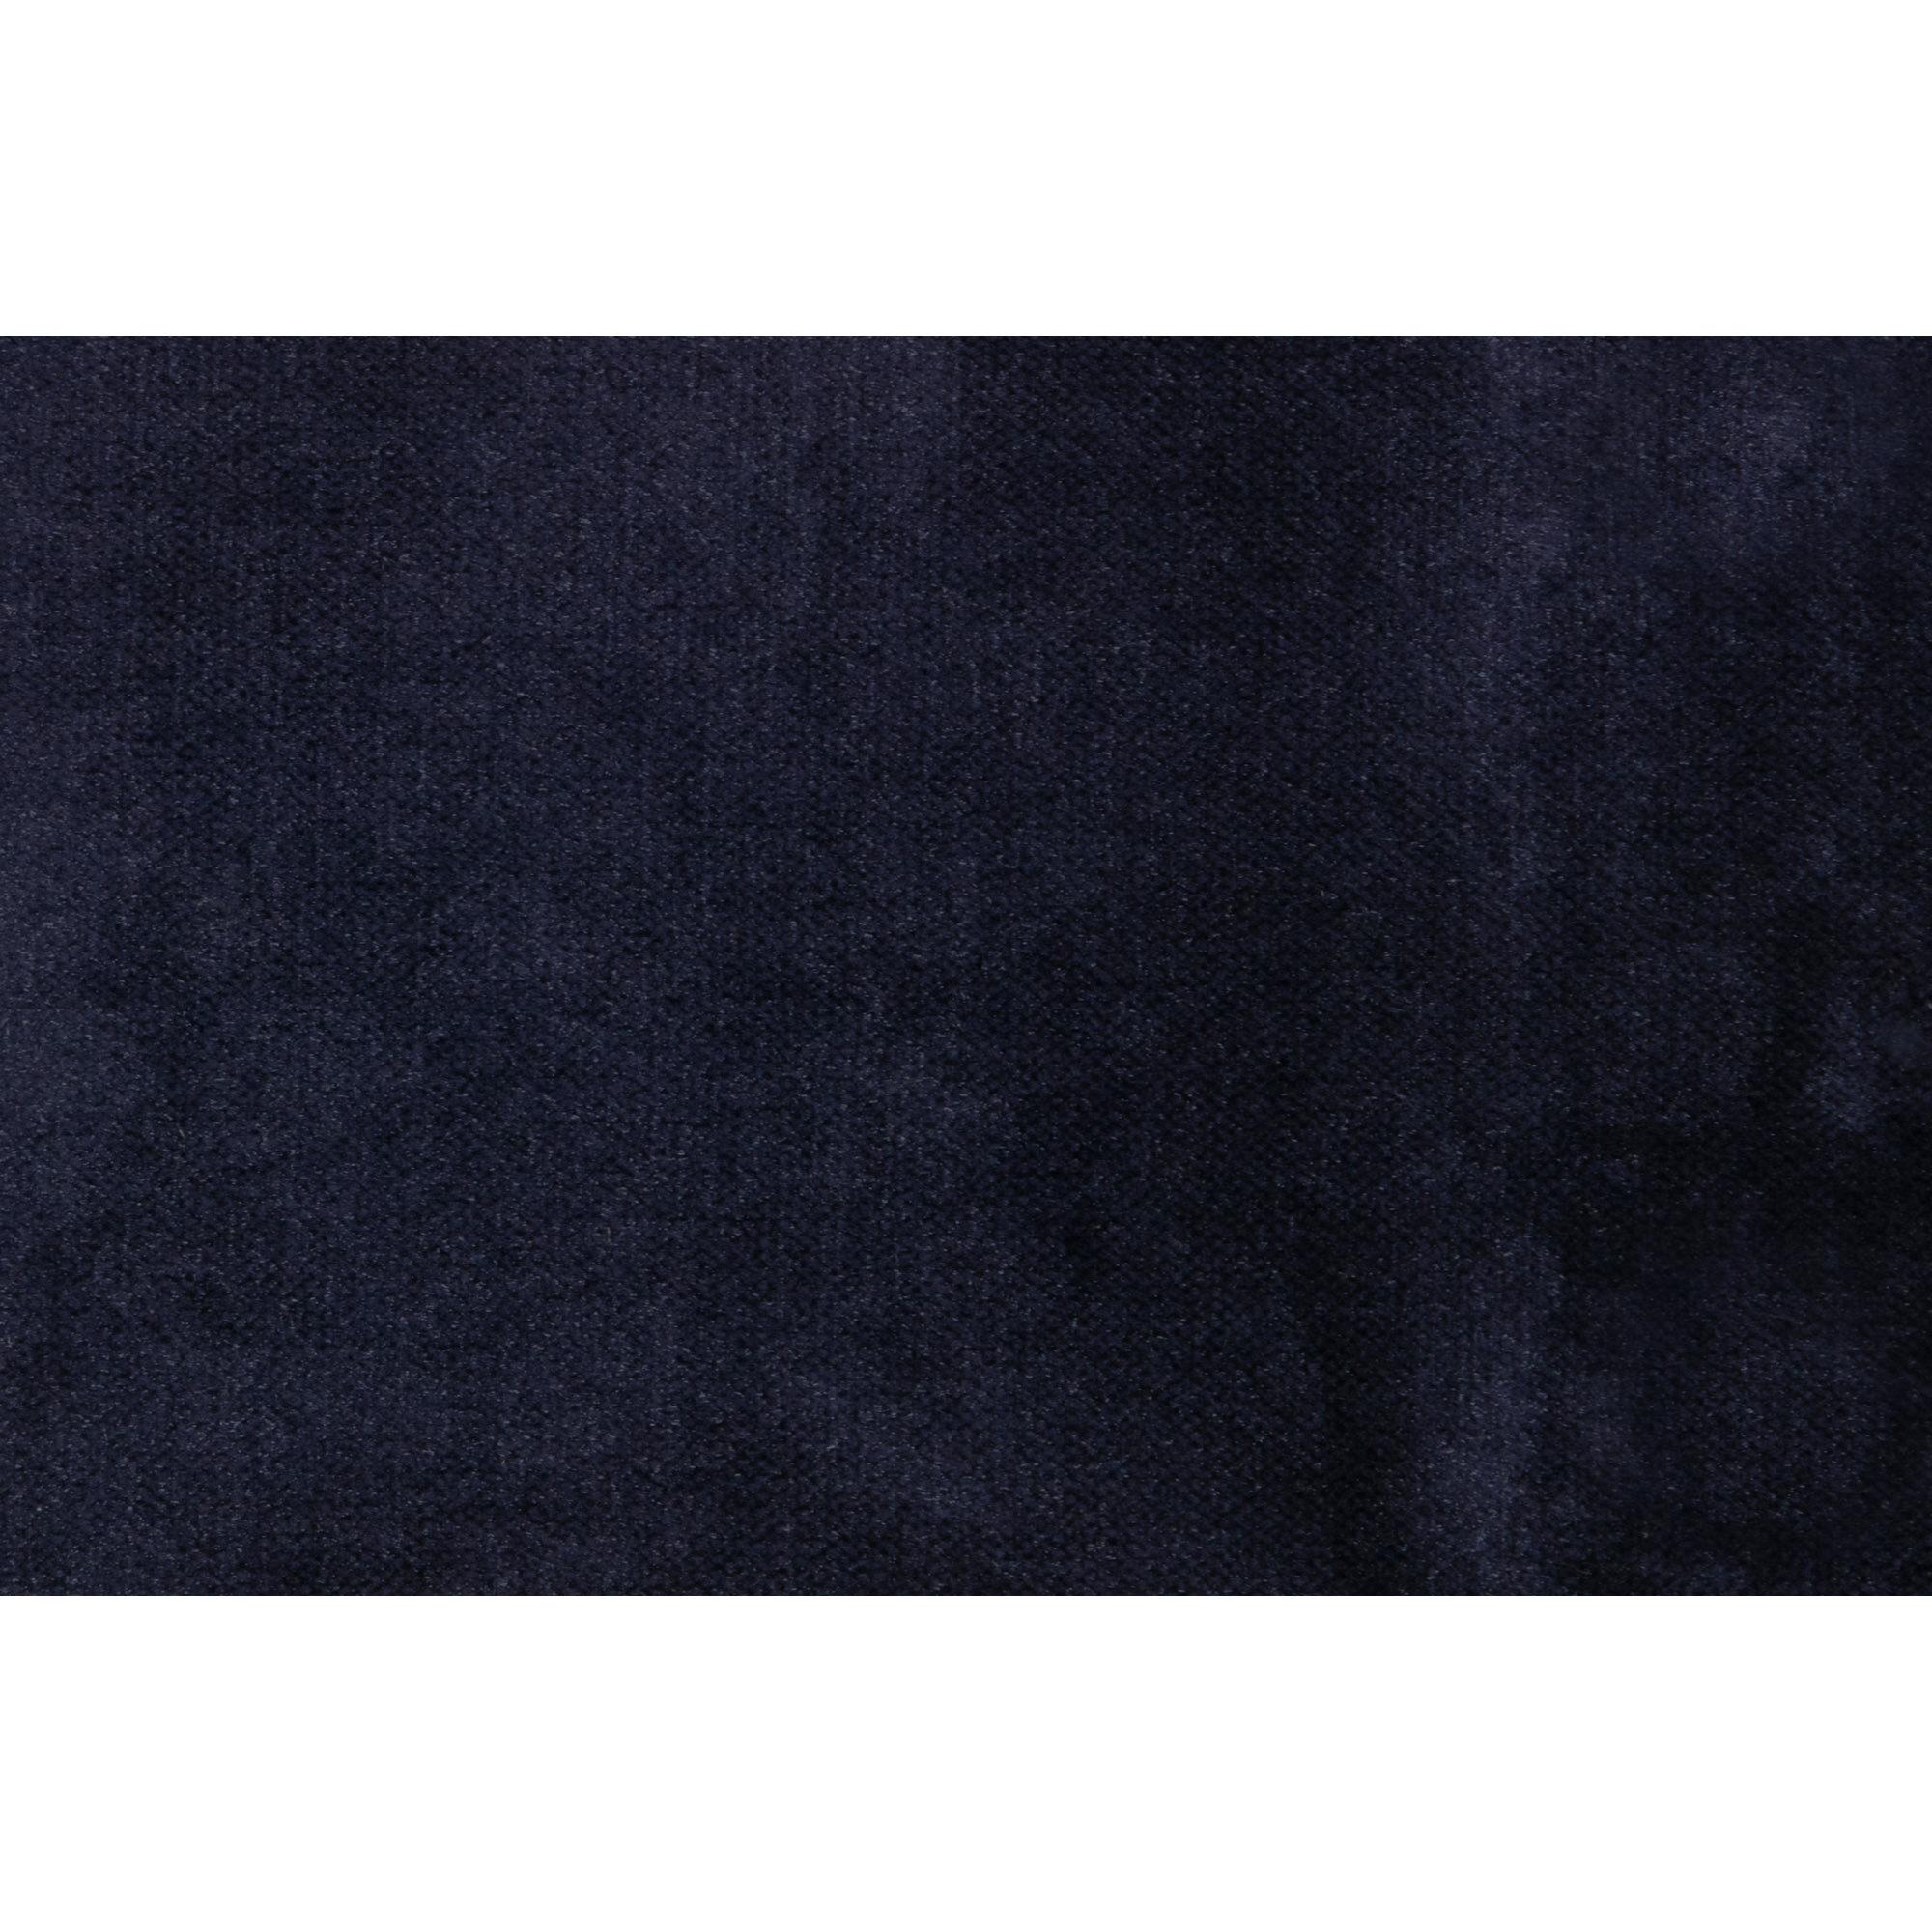  Rodeo Classic Lænestol Velour - Dark Blue fra BePureHome i Velour (Varenr: 800888-178)